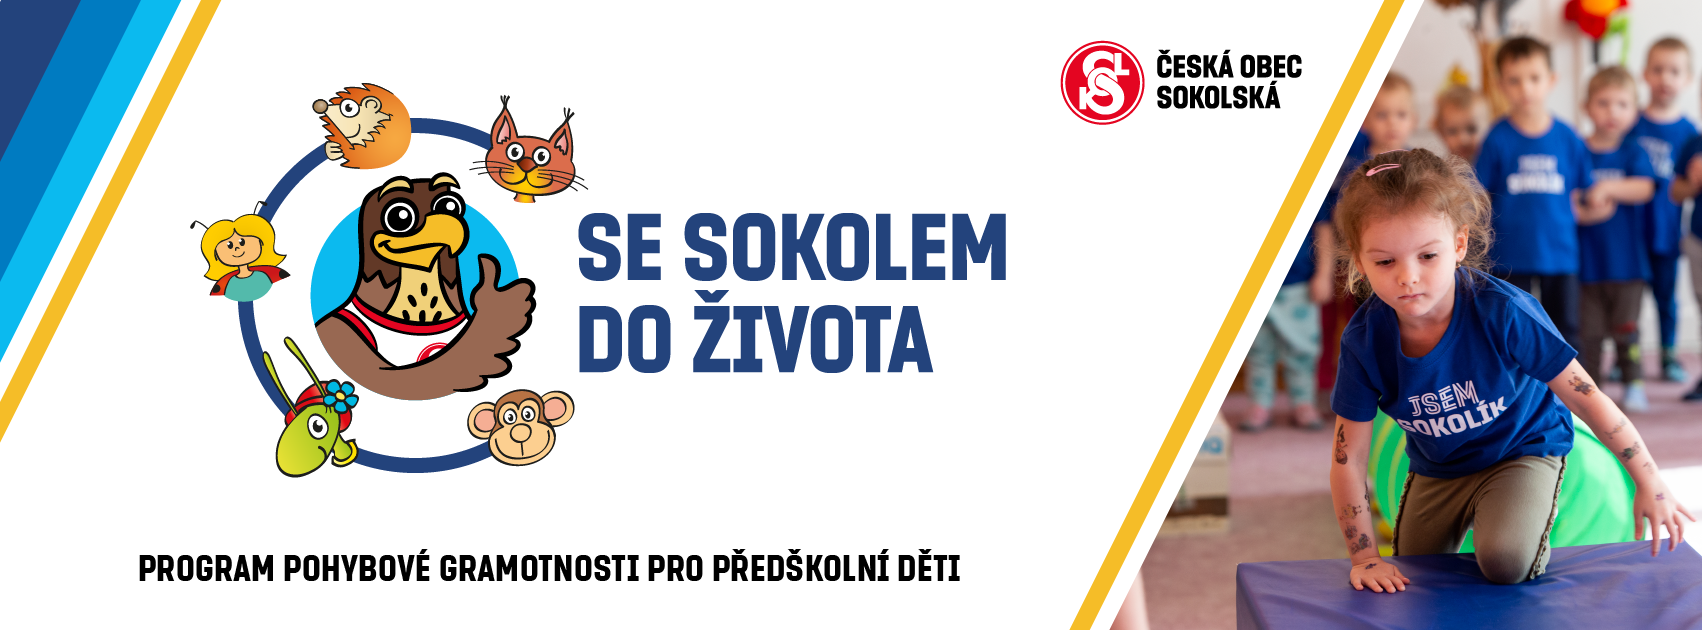 SSDŽ banner